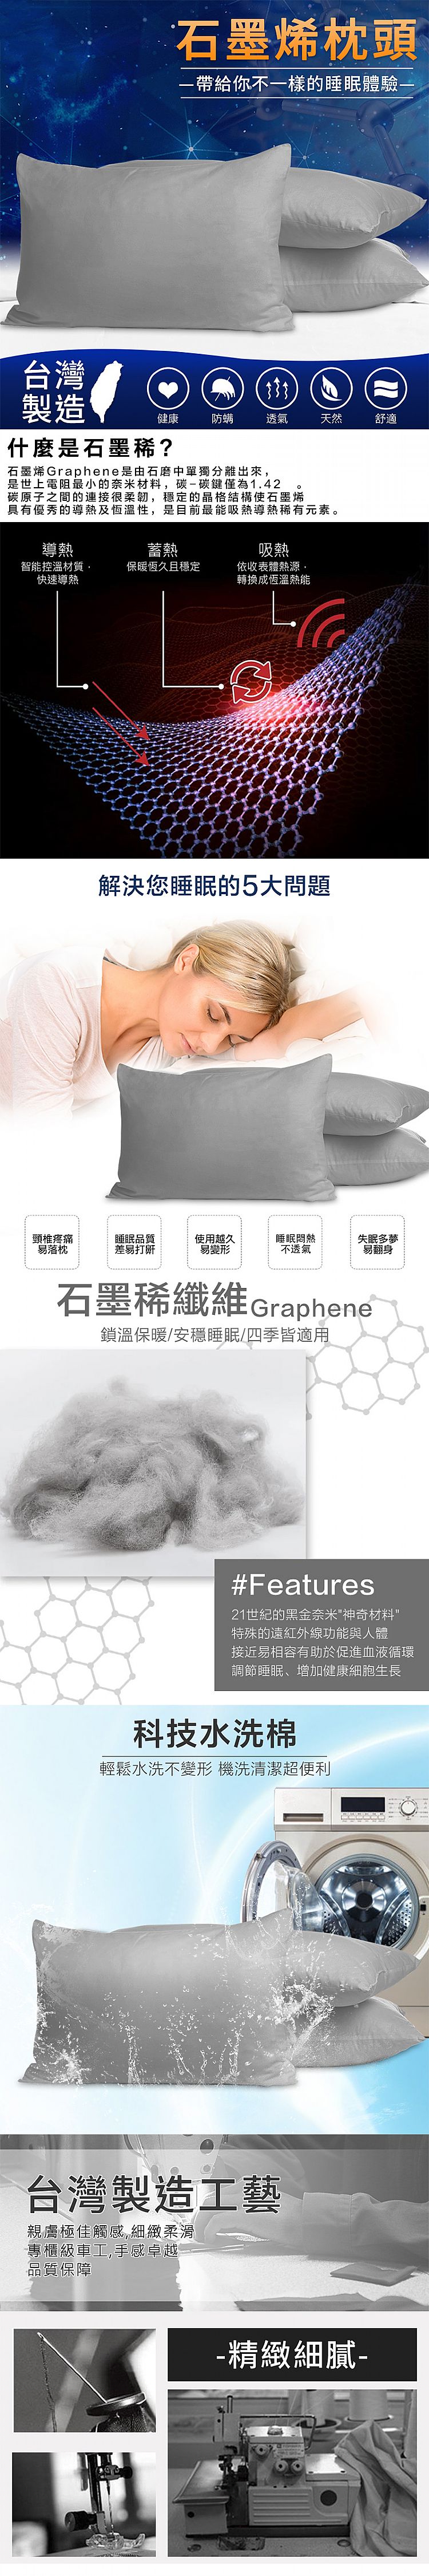 透氣 台灣製造 透氣 枕頭 水洗 透氣